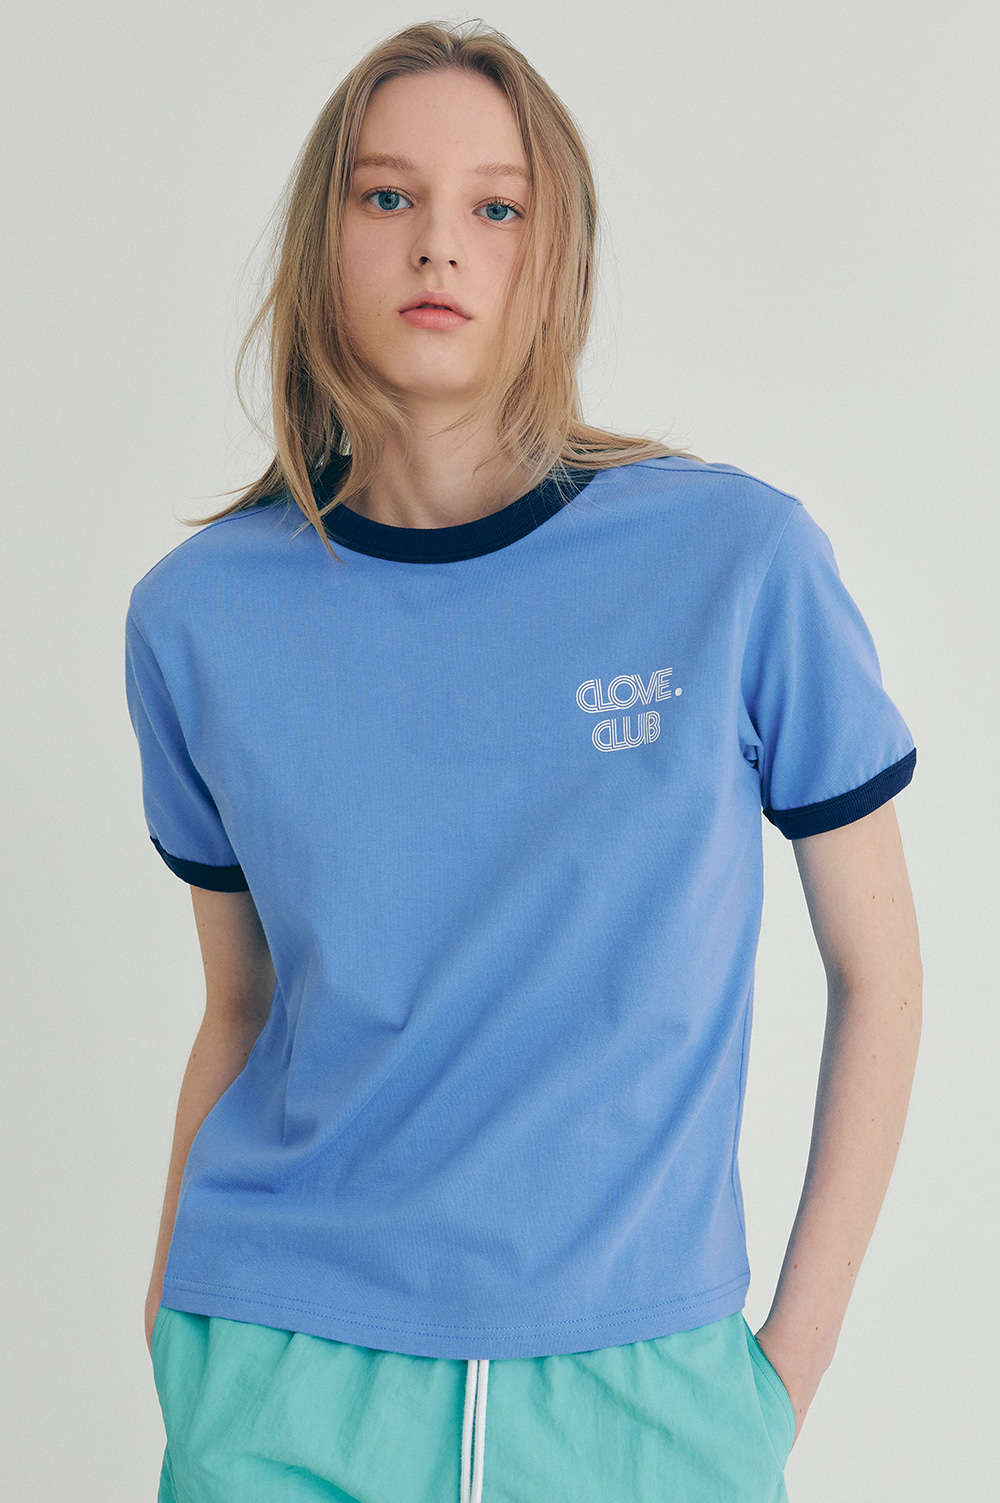 clove - [22SS clove] Point T-shirt (Blue)